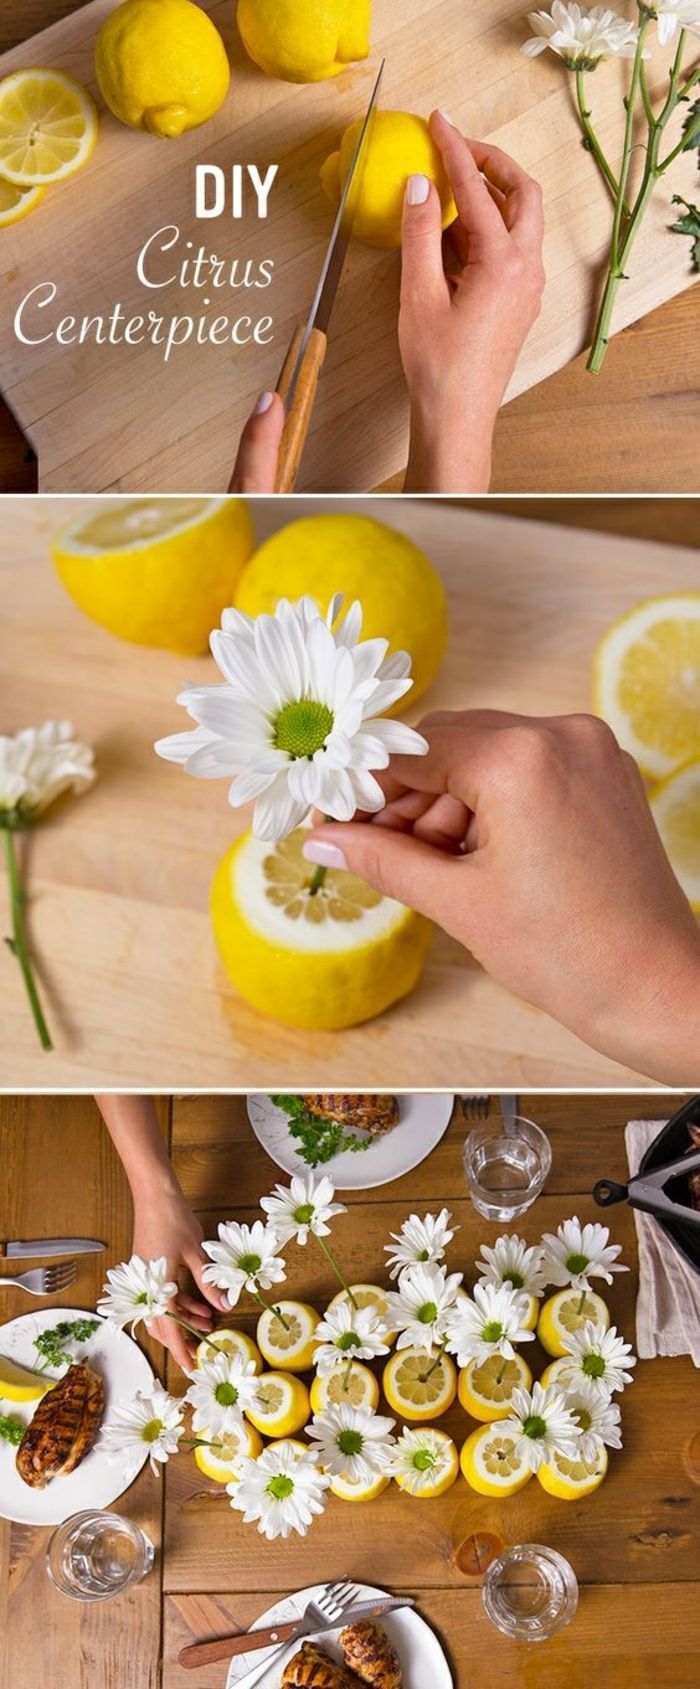 uporabite limone kot vaze, bele rože, okrasne mize